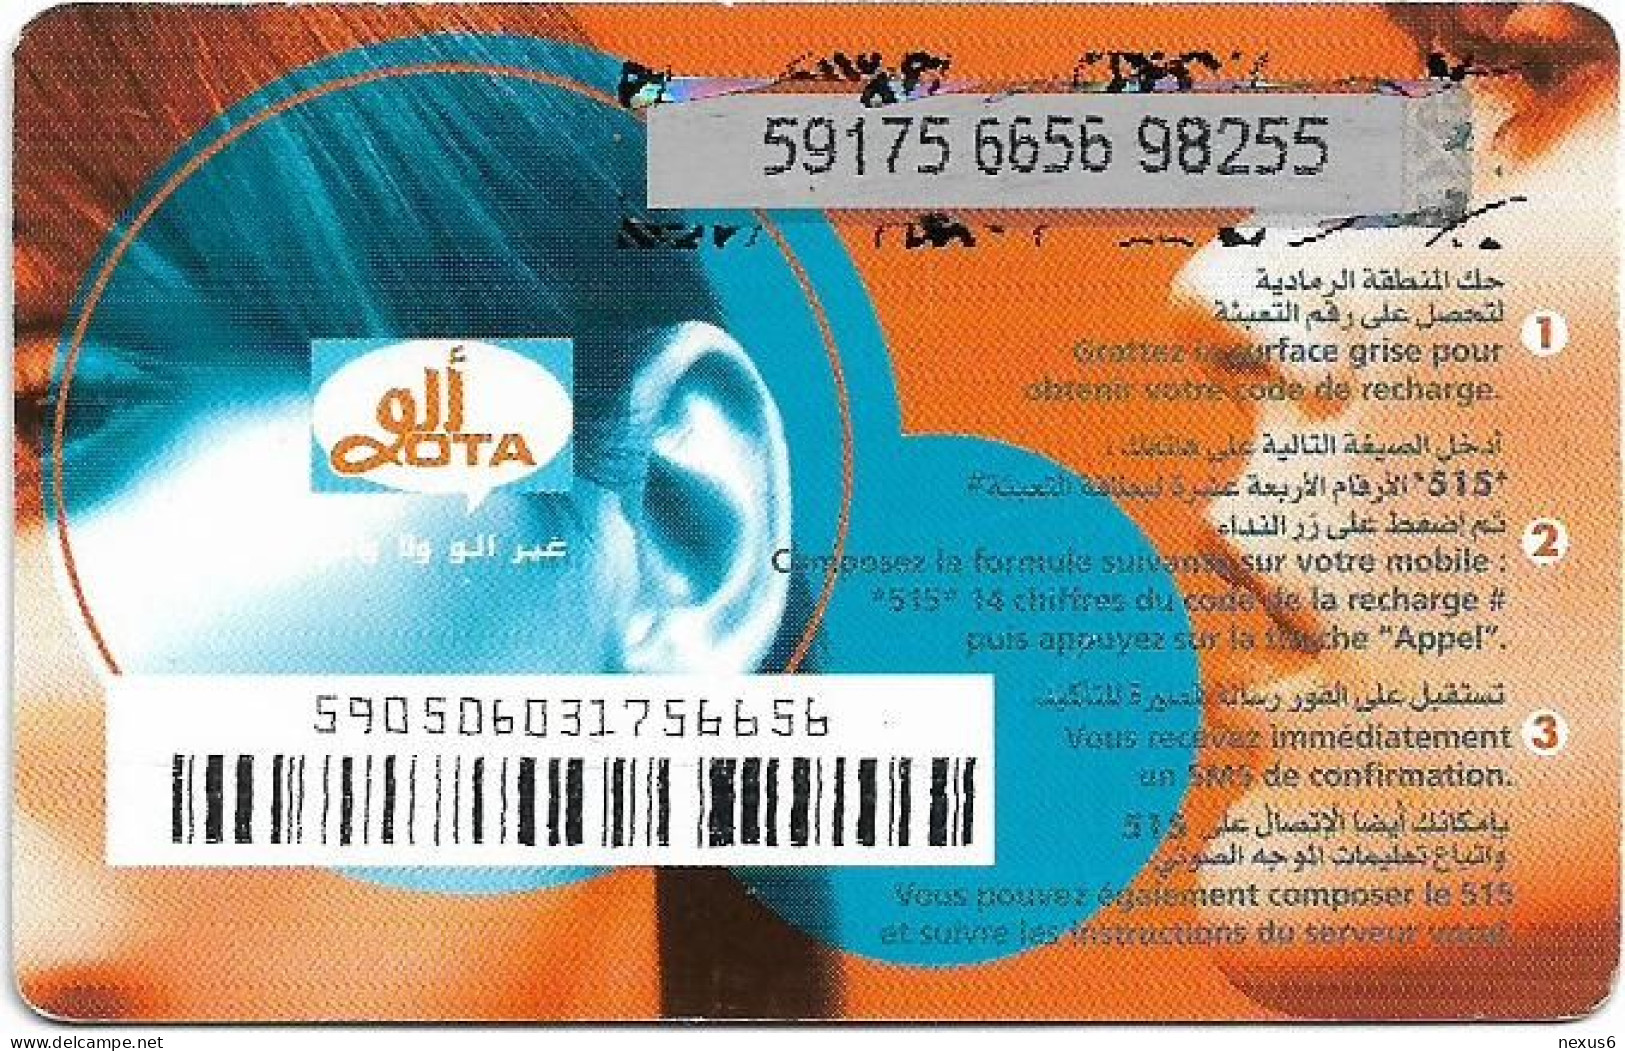 Algeria - Allo OTA - Allo OTA Blue 2 (Grey PIN Background), GSM Refill 500DA, Used - Algerije